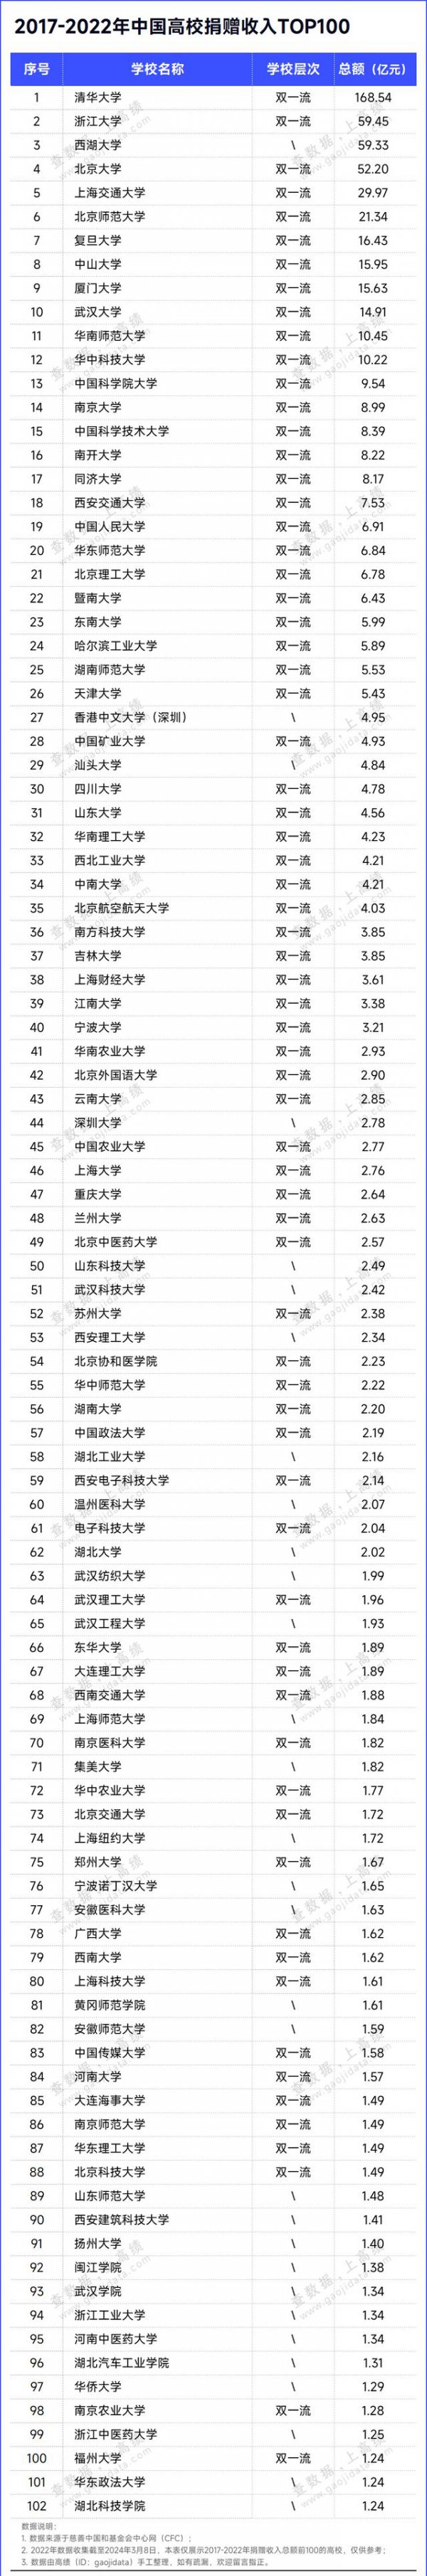 中国高校捐赠收入排名: 清华168亿、浙大、西湖大学、北大超50亿